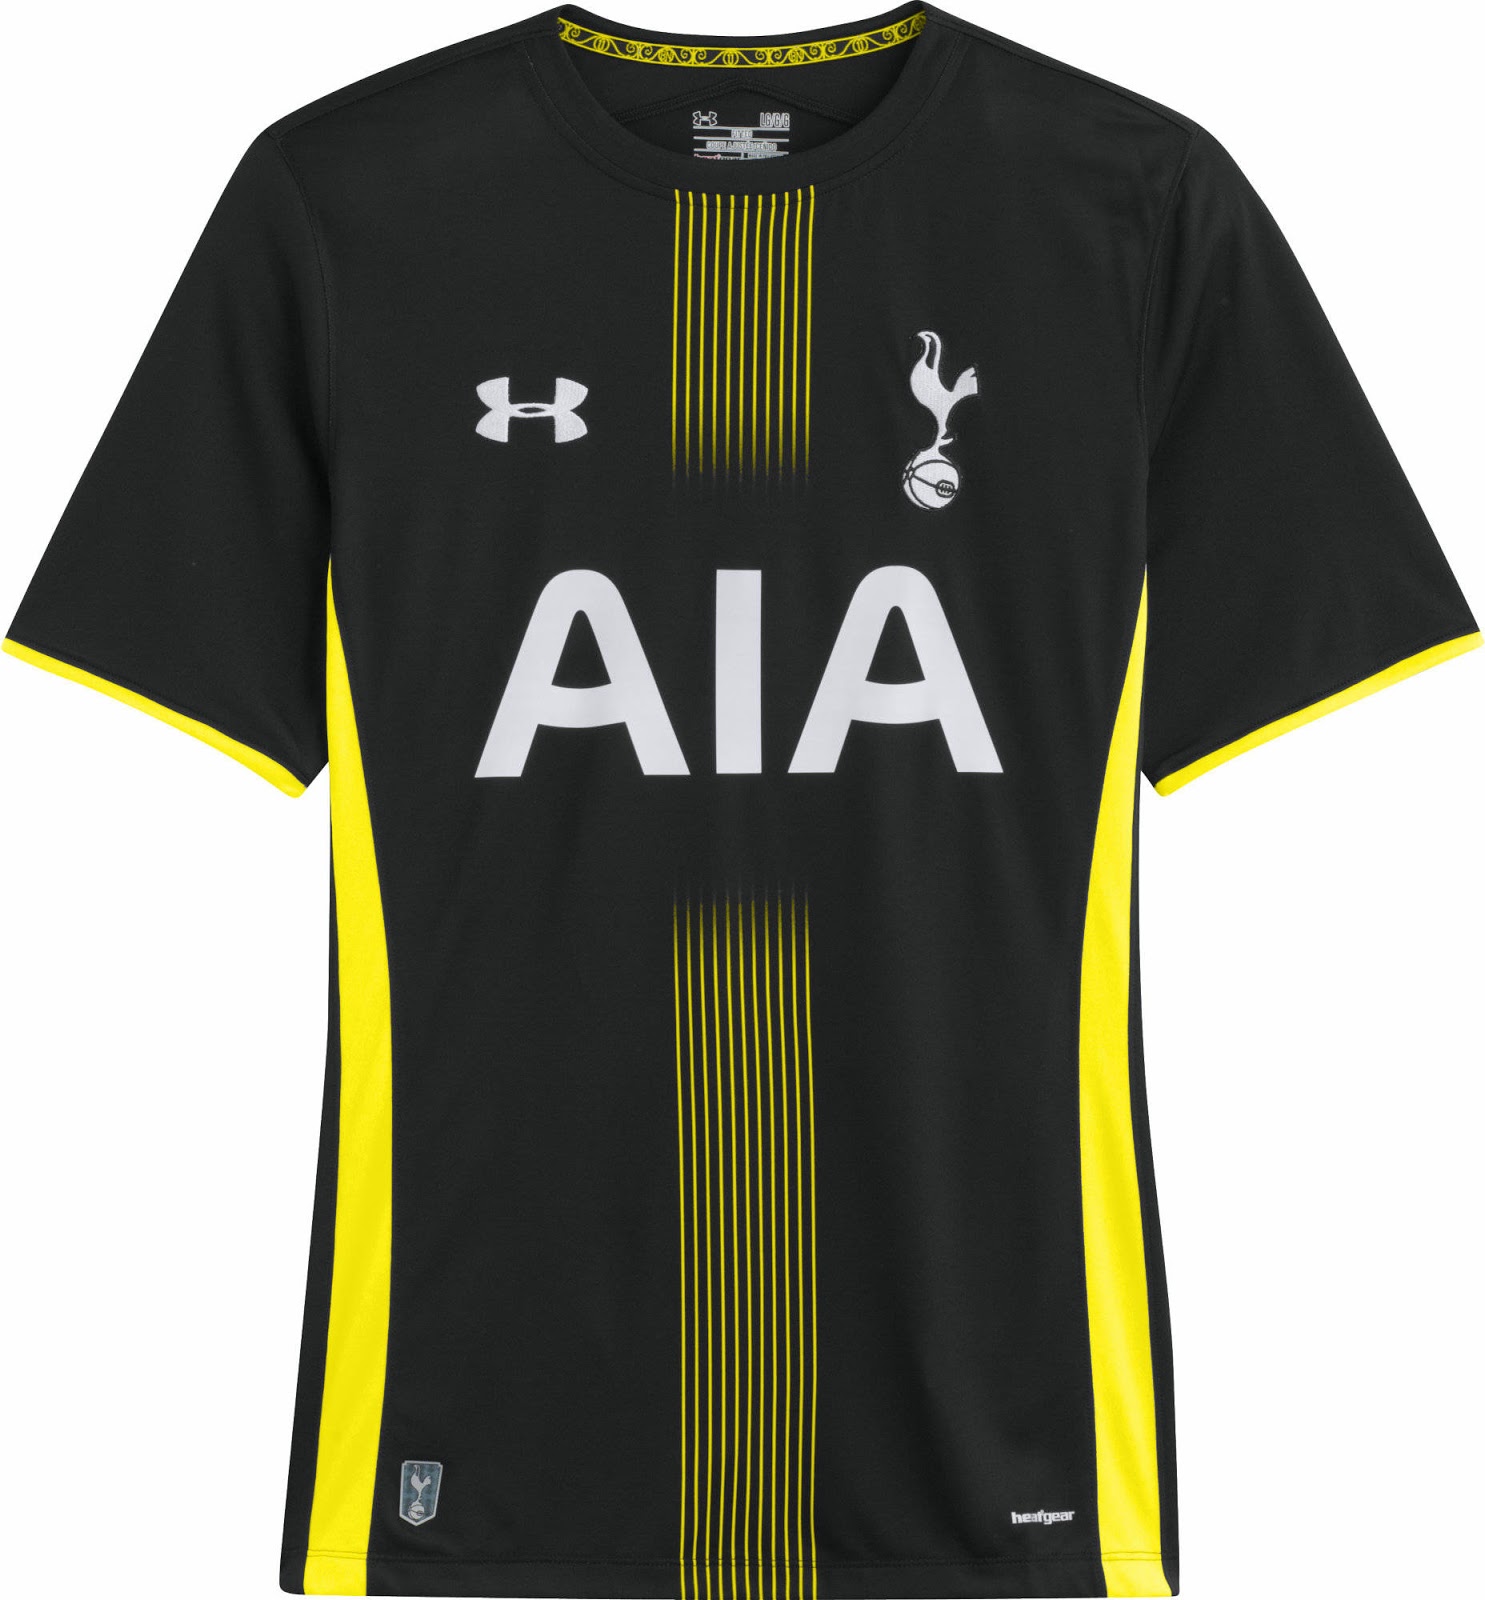 2014/15 Tottenham Hotspur Home Football Shirt / Old Soccer Jersey